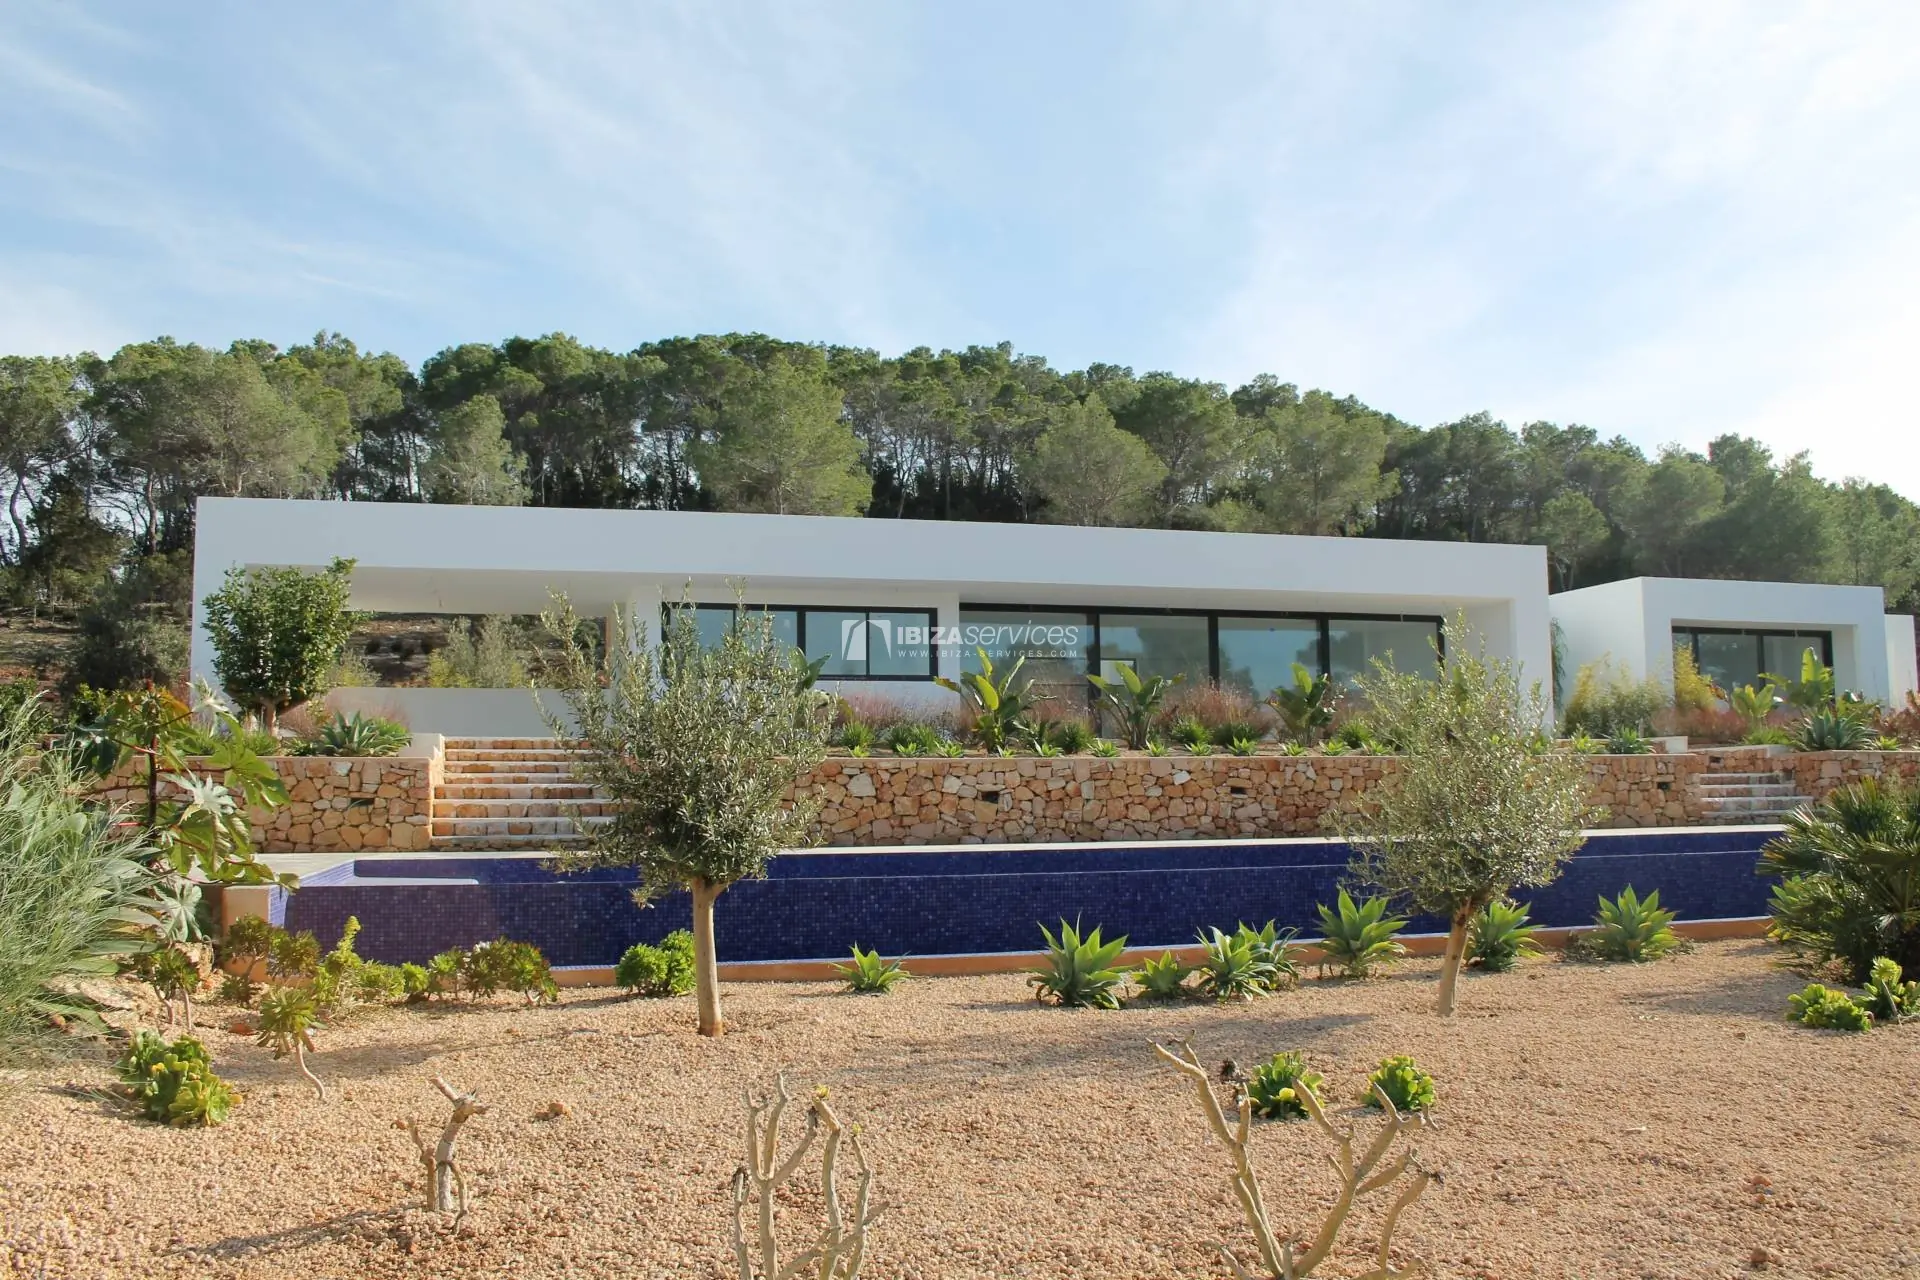 Acheter villa  neuve moderne de 5 chambres San Agustin Ibiza.